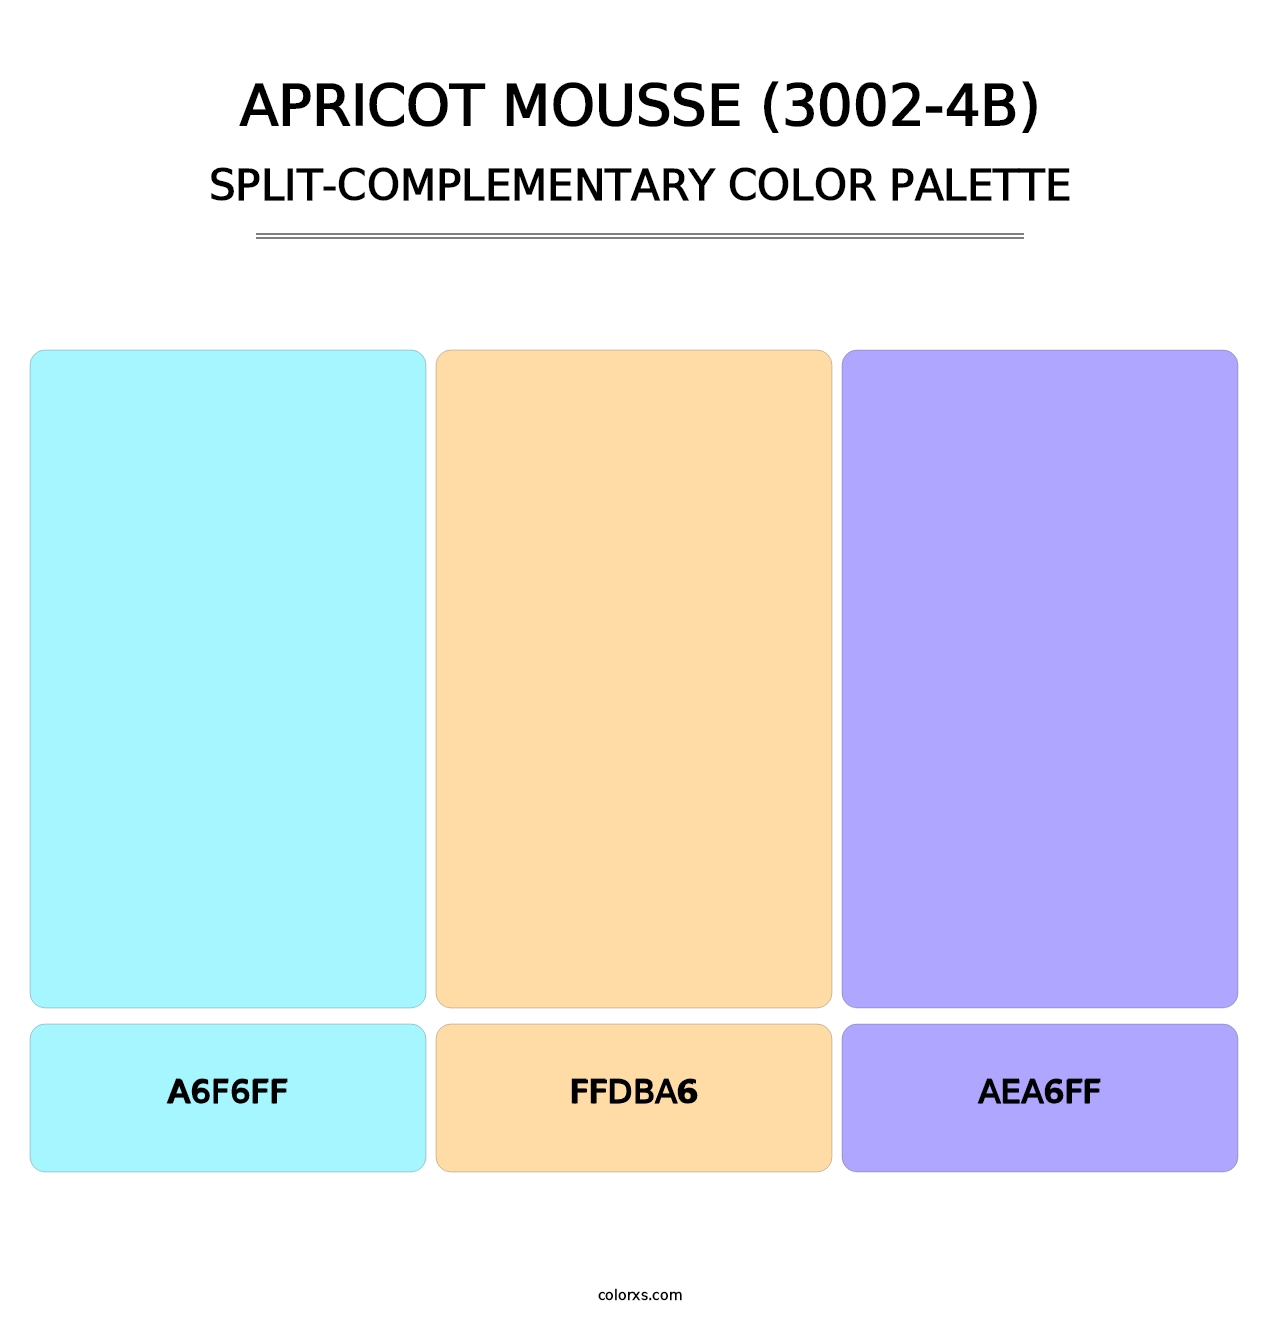 Apricot Mousse (3002-4B) - Split-Complementary Color Palette